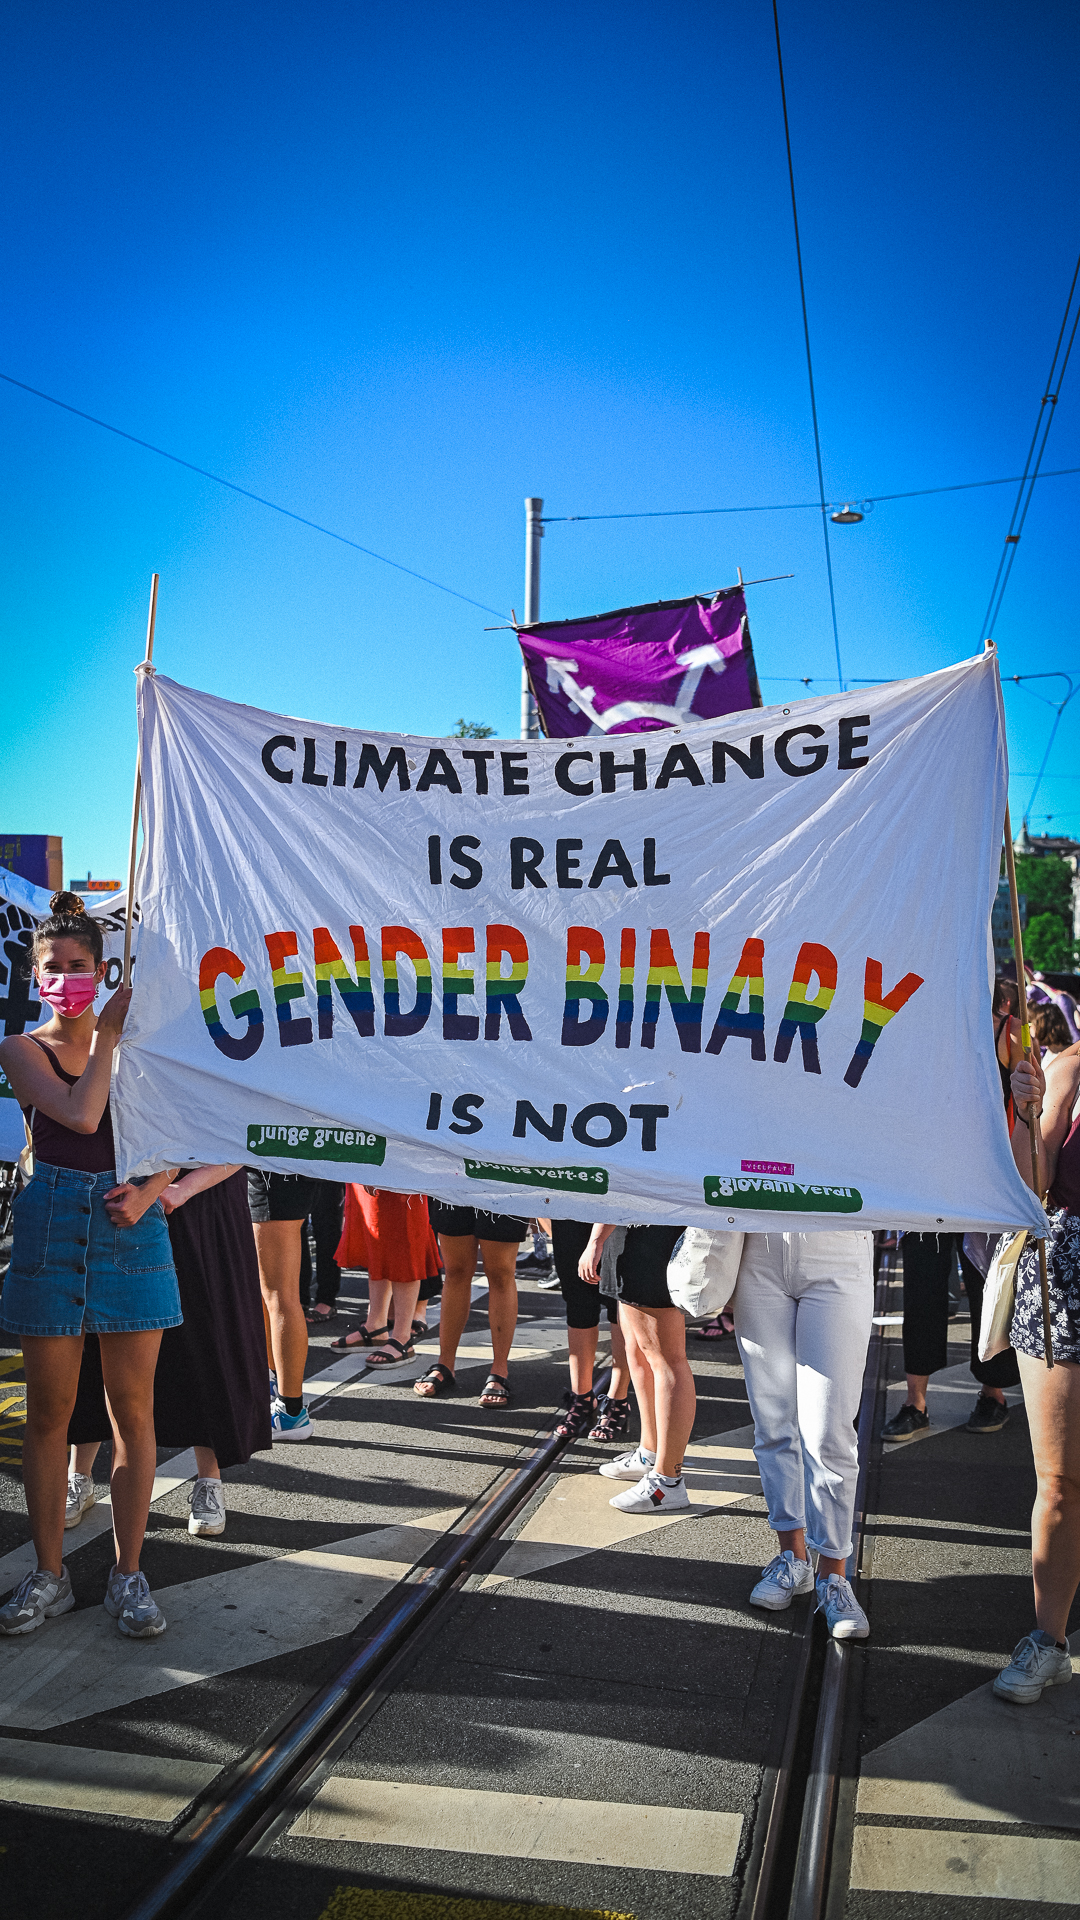 Ein Transparent in der Demo auf dem Limmatquai. Darauf steht: "Climat Change is real Gender Binary is not" und das logo der jungen grünen. "Gender Binary" ist in Regenbogenfarben geschrieben.